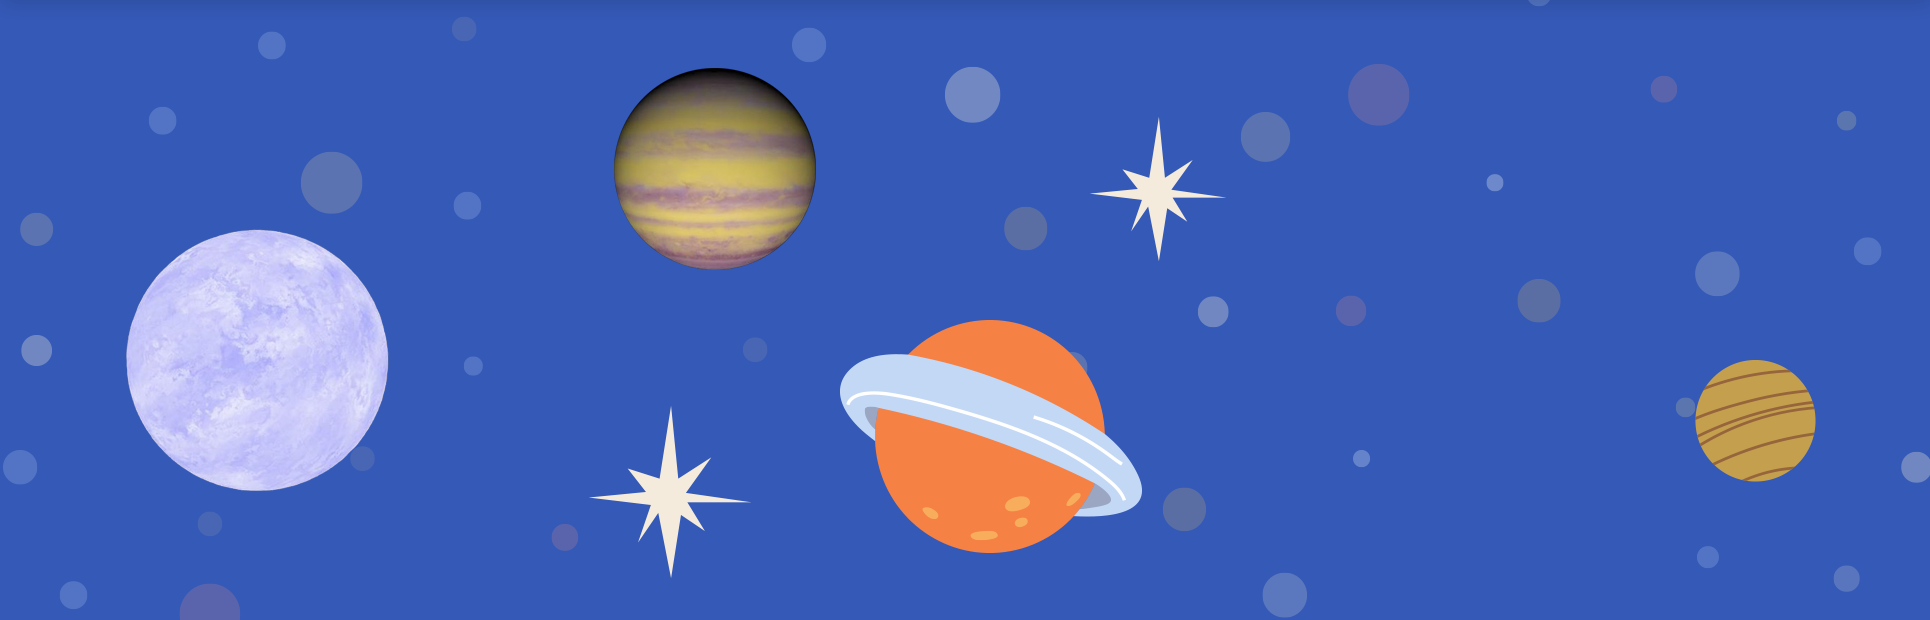 푸른색 우주 배경에 여러 가지 별과 행성이 그려져 있다. 별 마루와 외계행성 아라, 주황색에 하늘색 띠가 둘러있는 행성이 크게 있으며, 흰색으로 반짝이는 듯한 효과도 군데군데 그려져 있다.